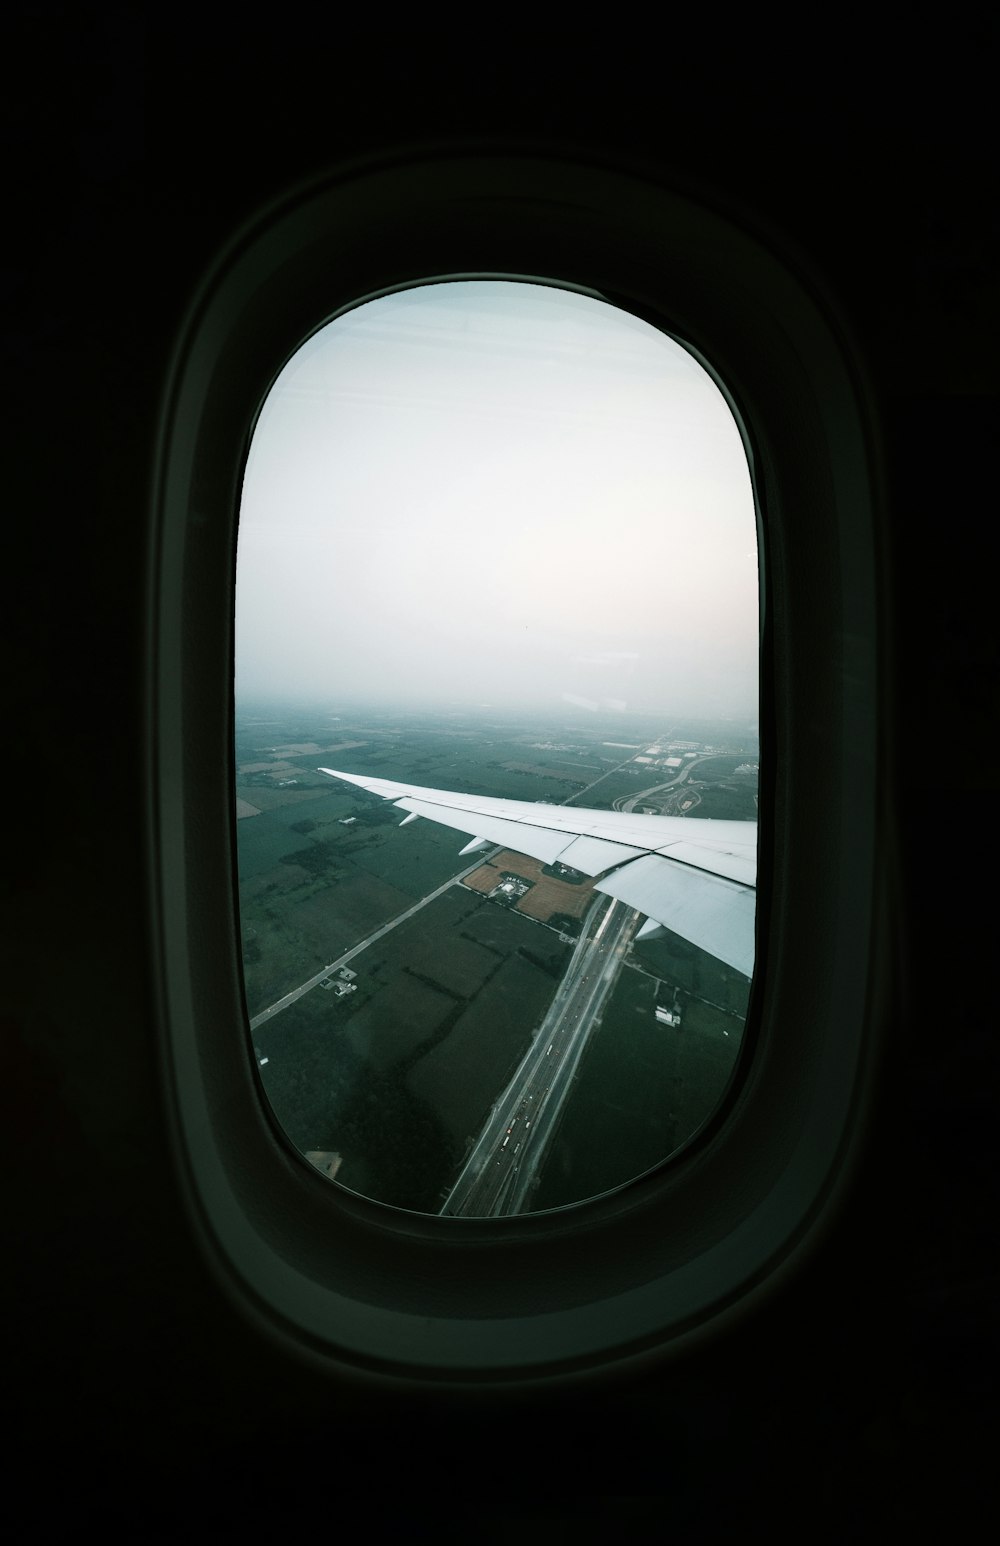 Vista de la ventana del avión de nubes blancas durante el día